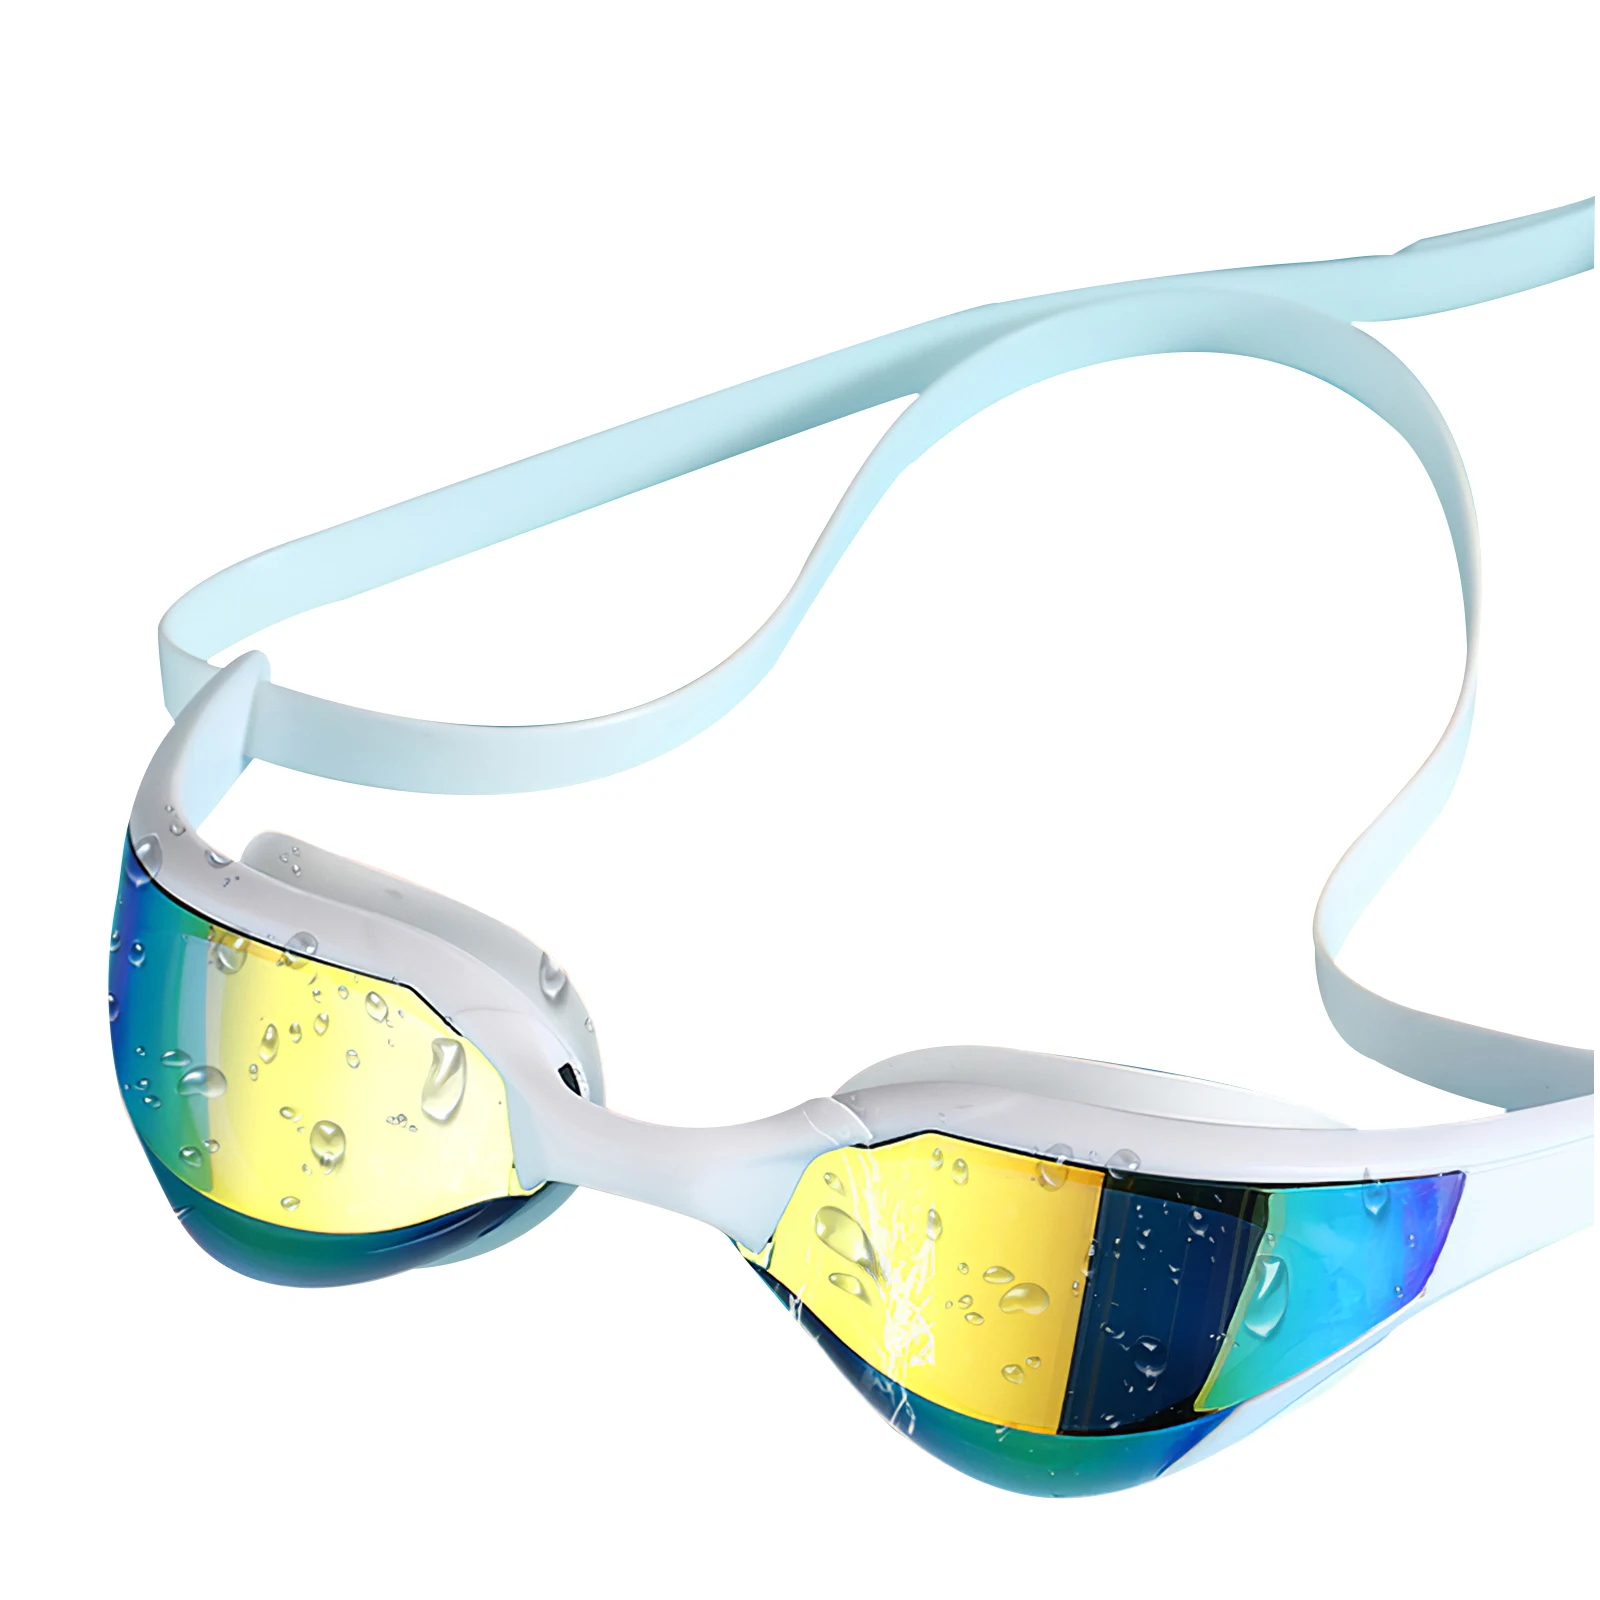 

Диоптрийные плавательные очки, профессиональные силиконовые плавательные очки при близорукости, антизапотевающие, УФ-защитные, плаватель...